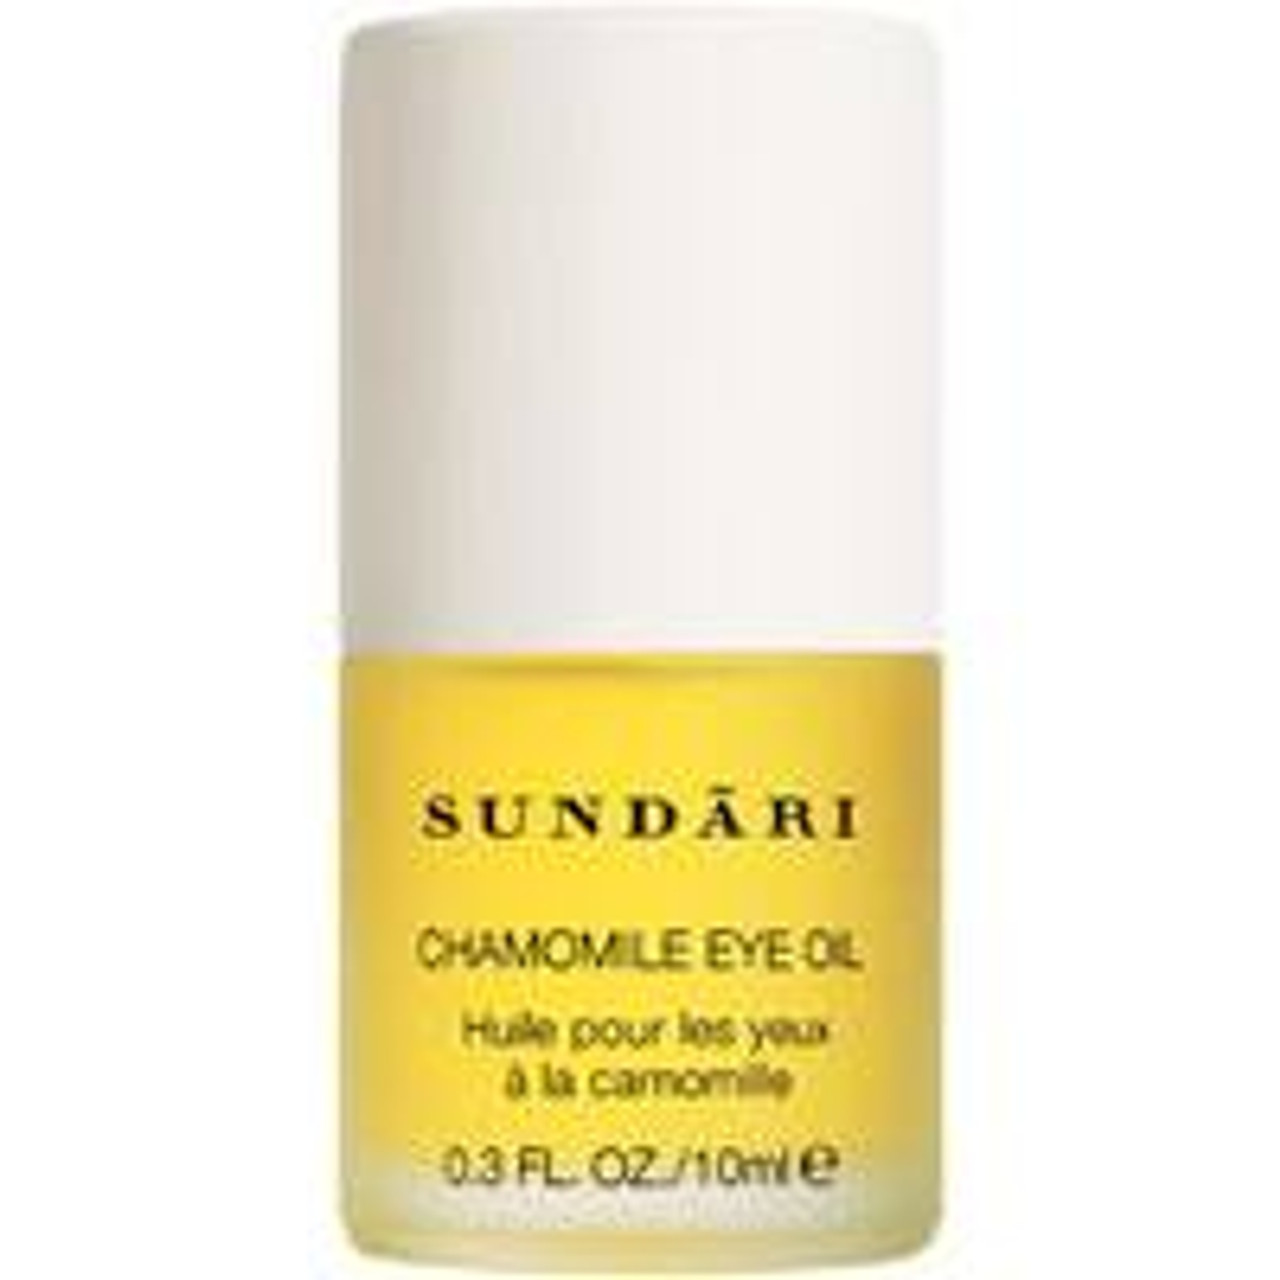 Sundari Chamomile Eye Oil, .3 oz